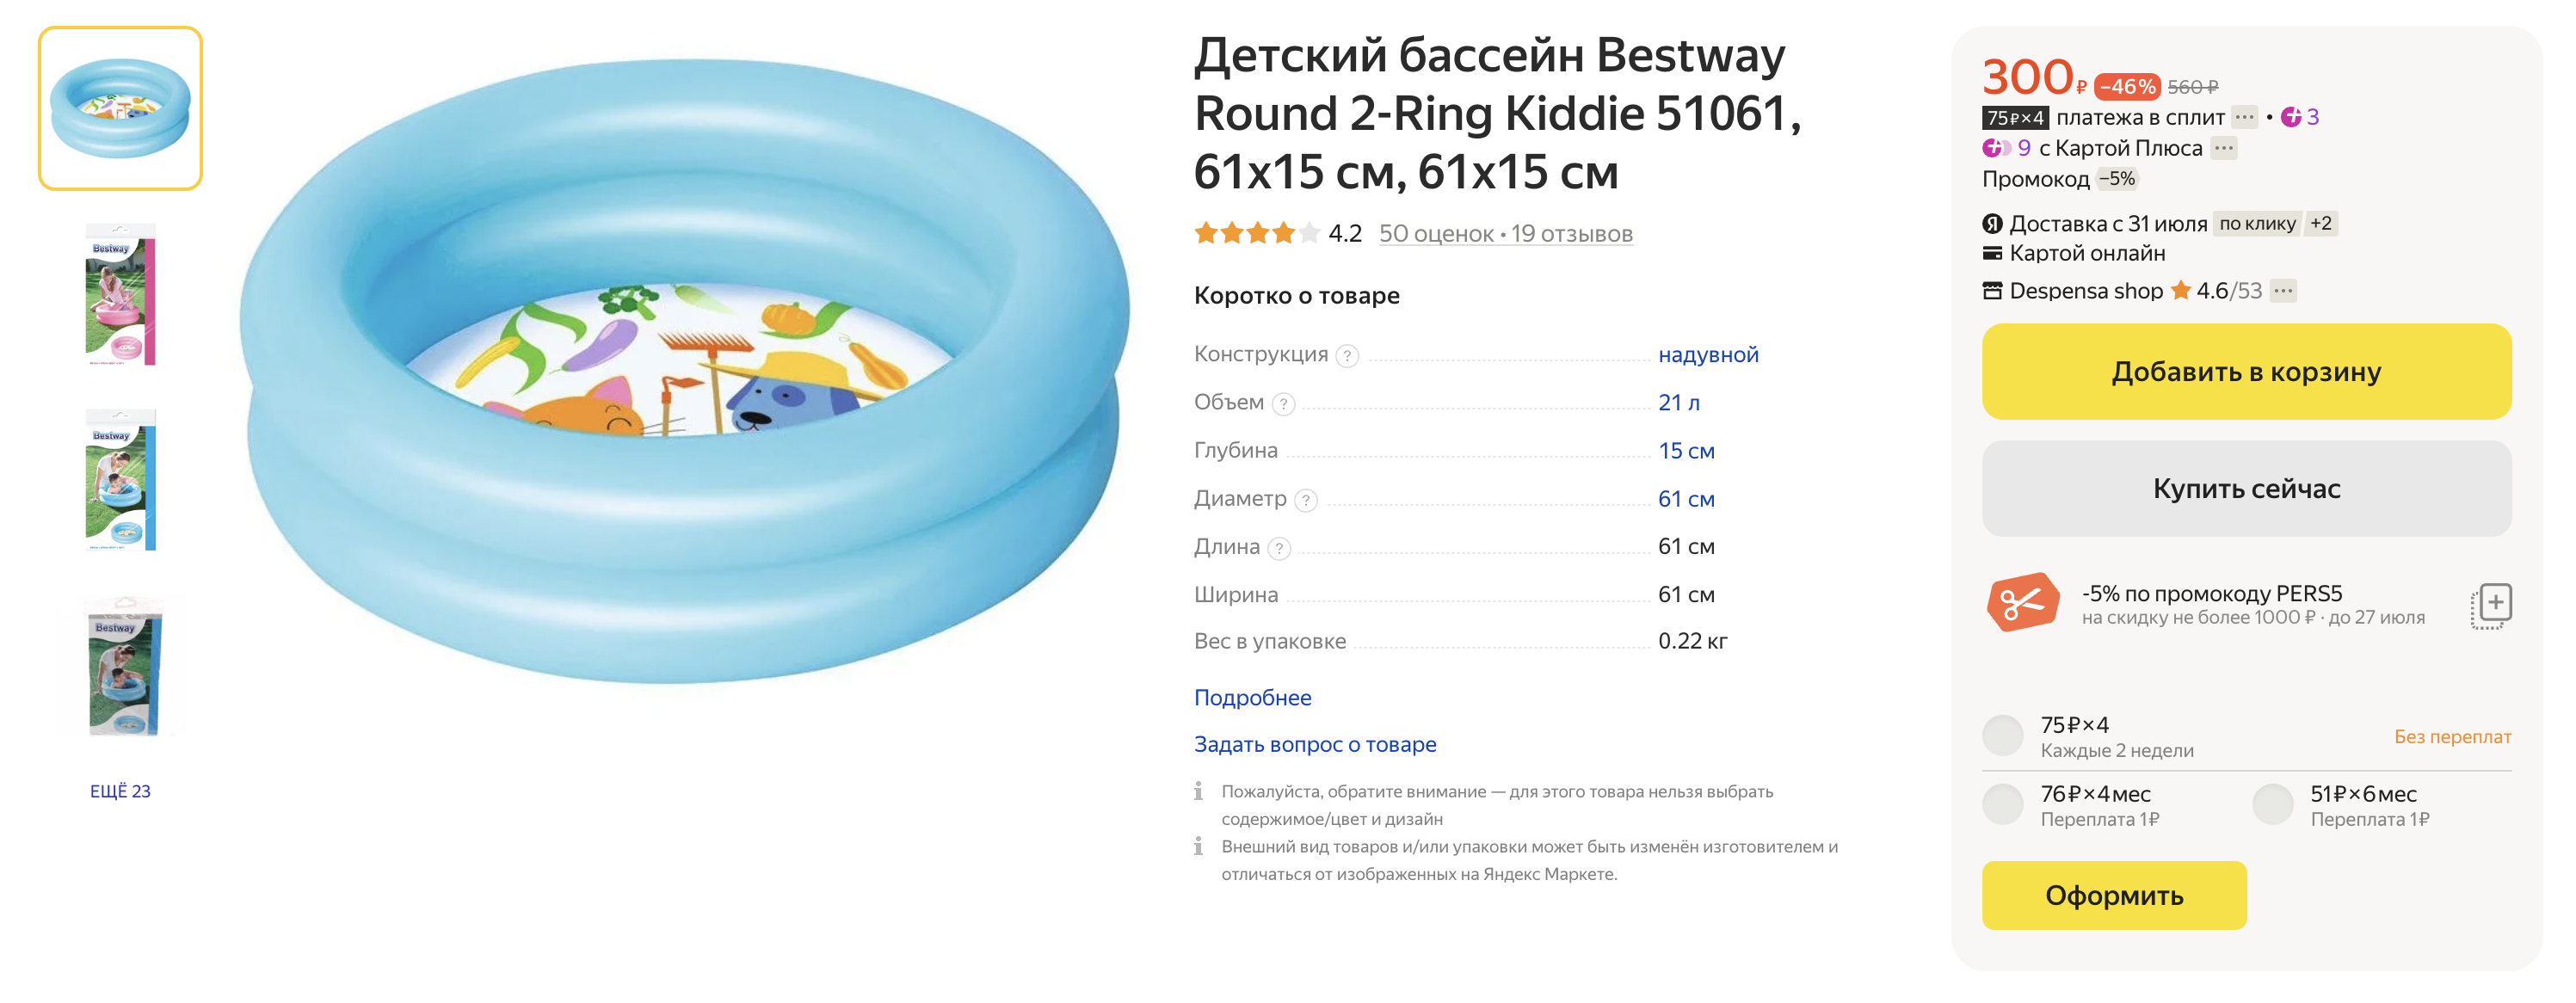 Китайский бассейн фирмы Bestway для совсем маленьких детей продается всего за 299 ₽. Источник: market.yandex.ru